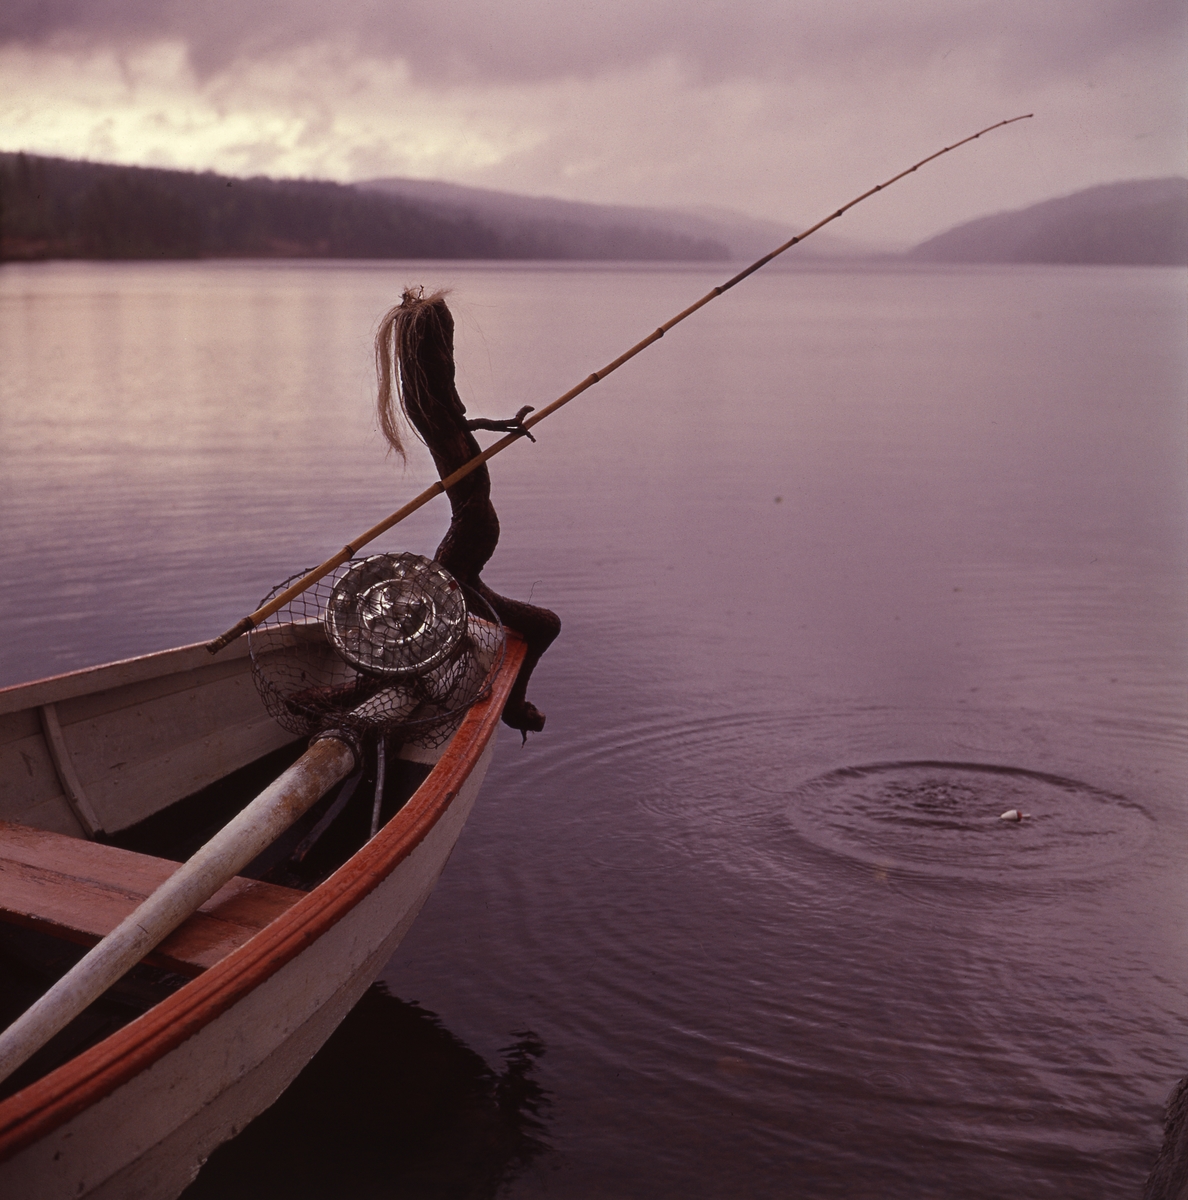 Trätrollet Skrälla Skrälle sitter i fören på en roddbåt på sjön Ängratörn och metar.